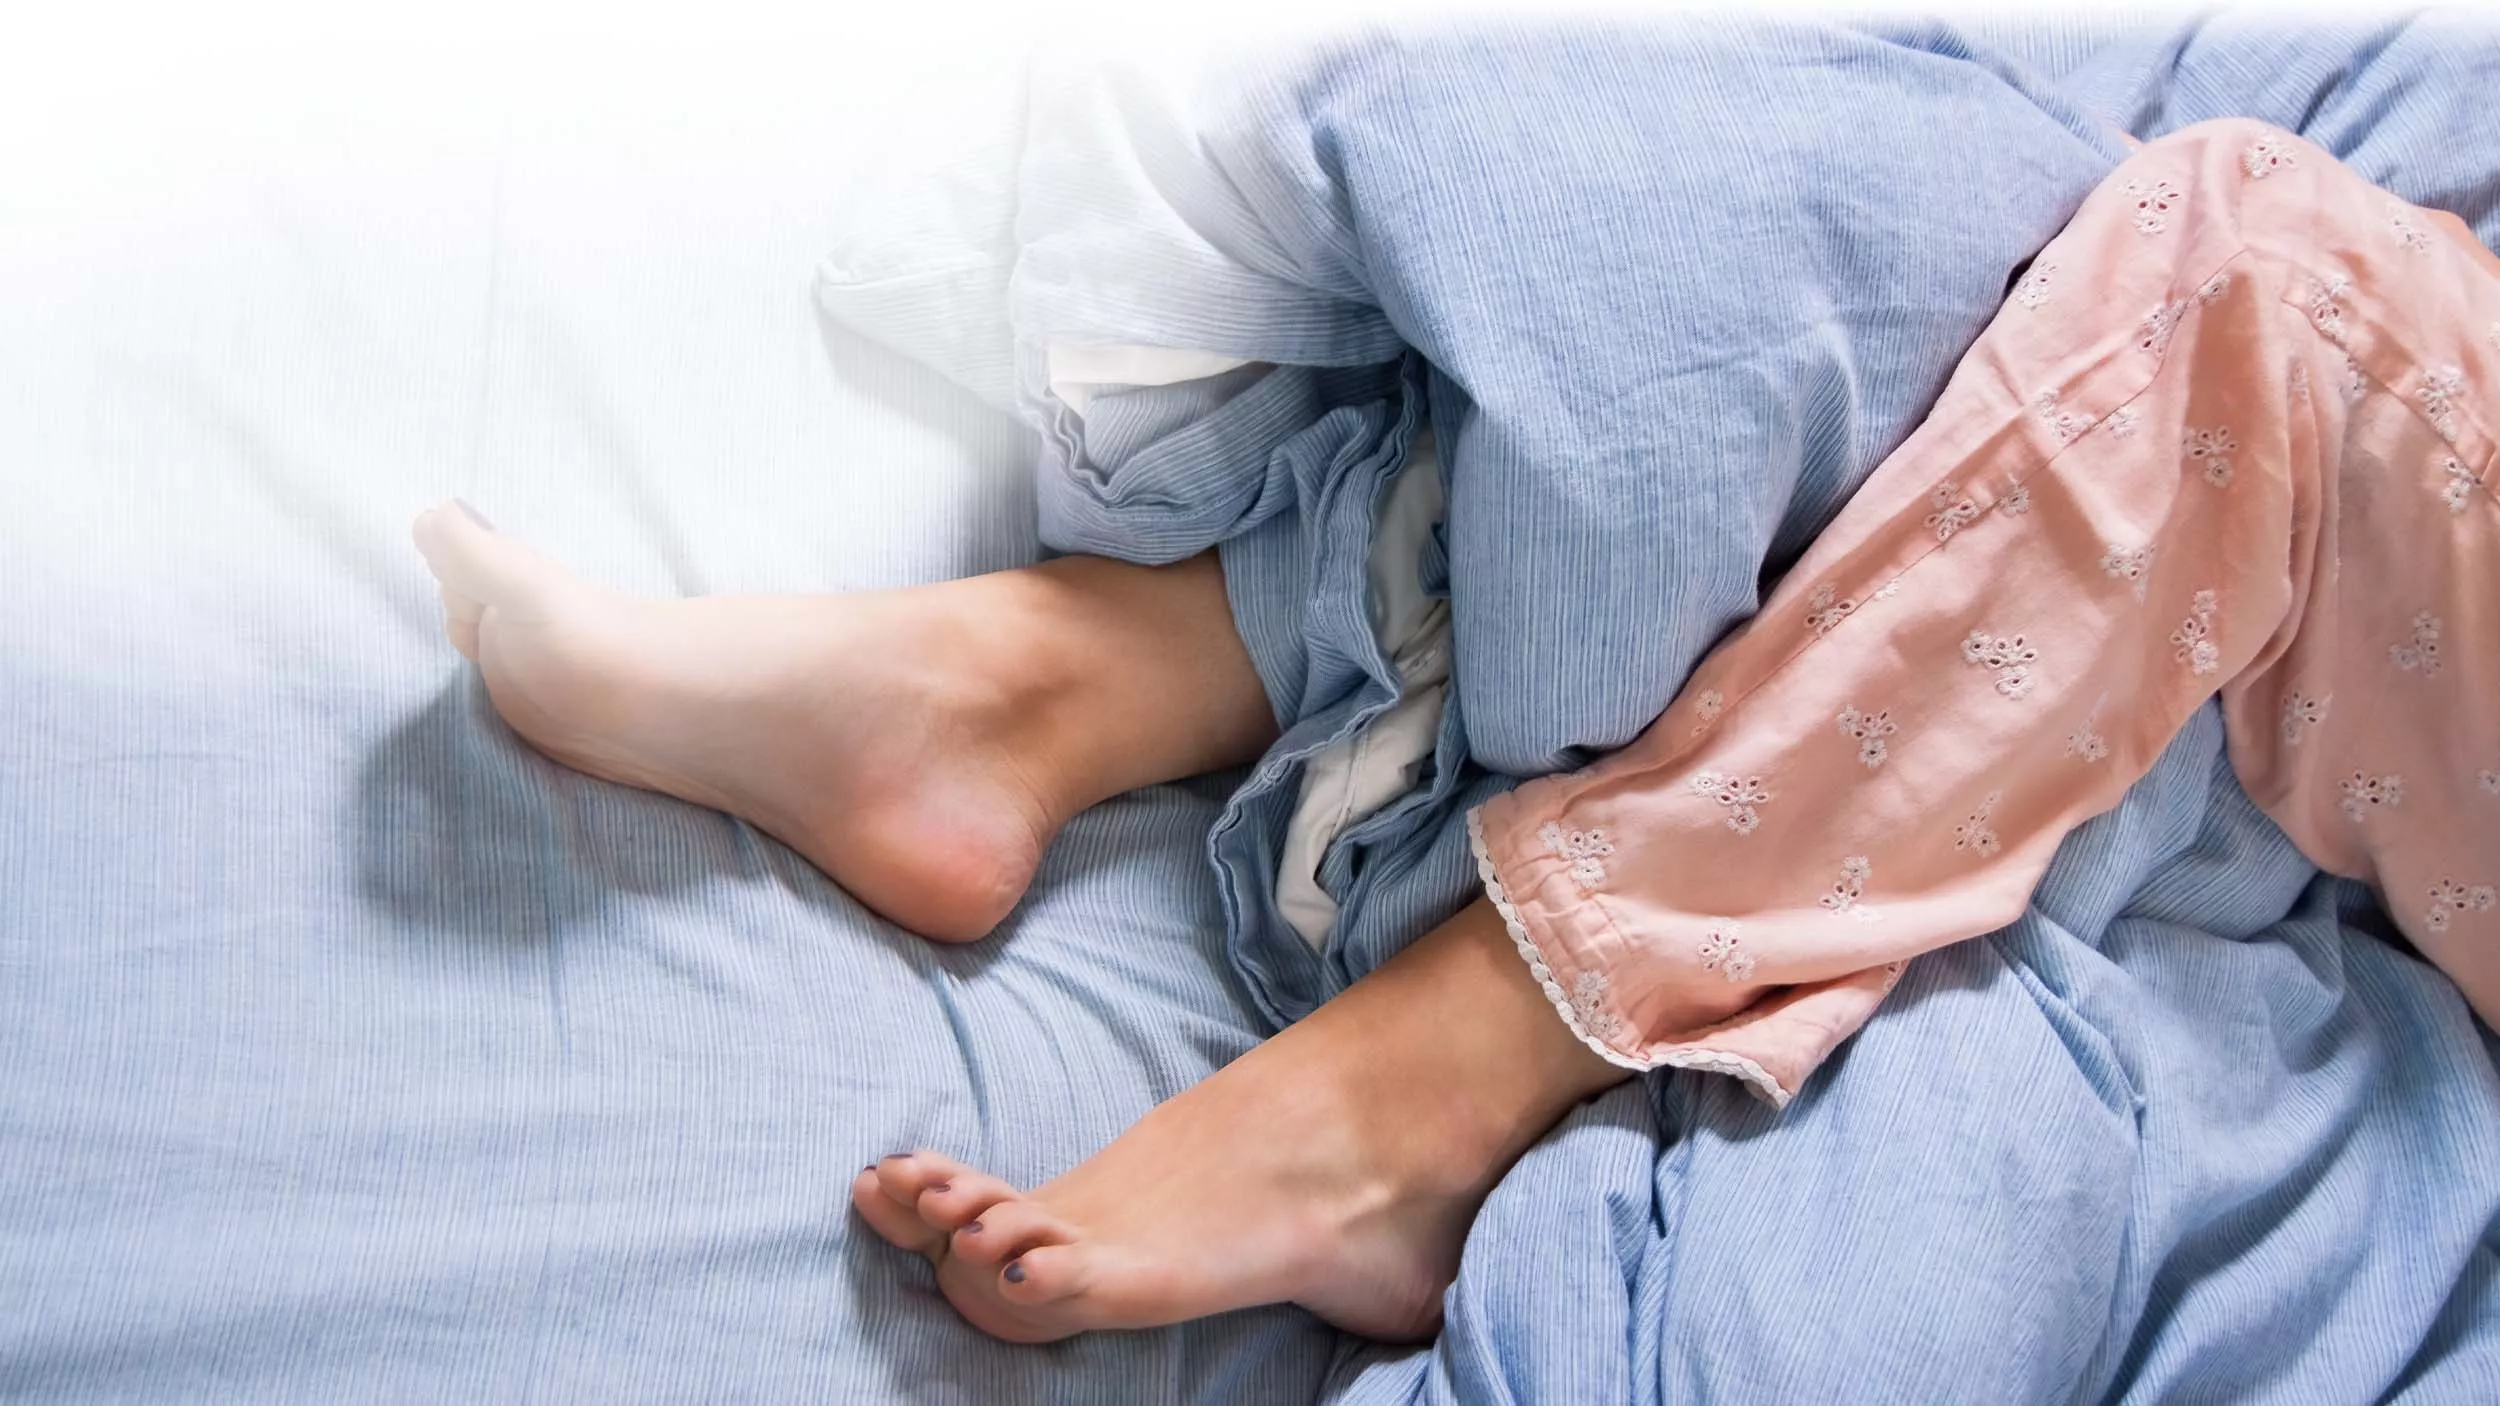 Unruhige Beine beim Einschlafen müssen nicht immer medikamentös behandelt werden. Auch Naturheilkunde oder Homöopathie können mitunter beim Restless-Legs-Syndrom helfen. - © juniart